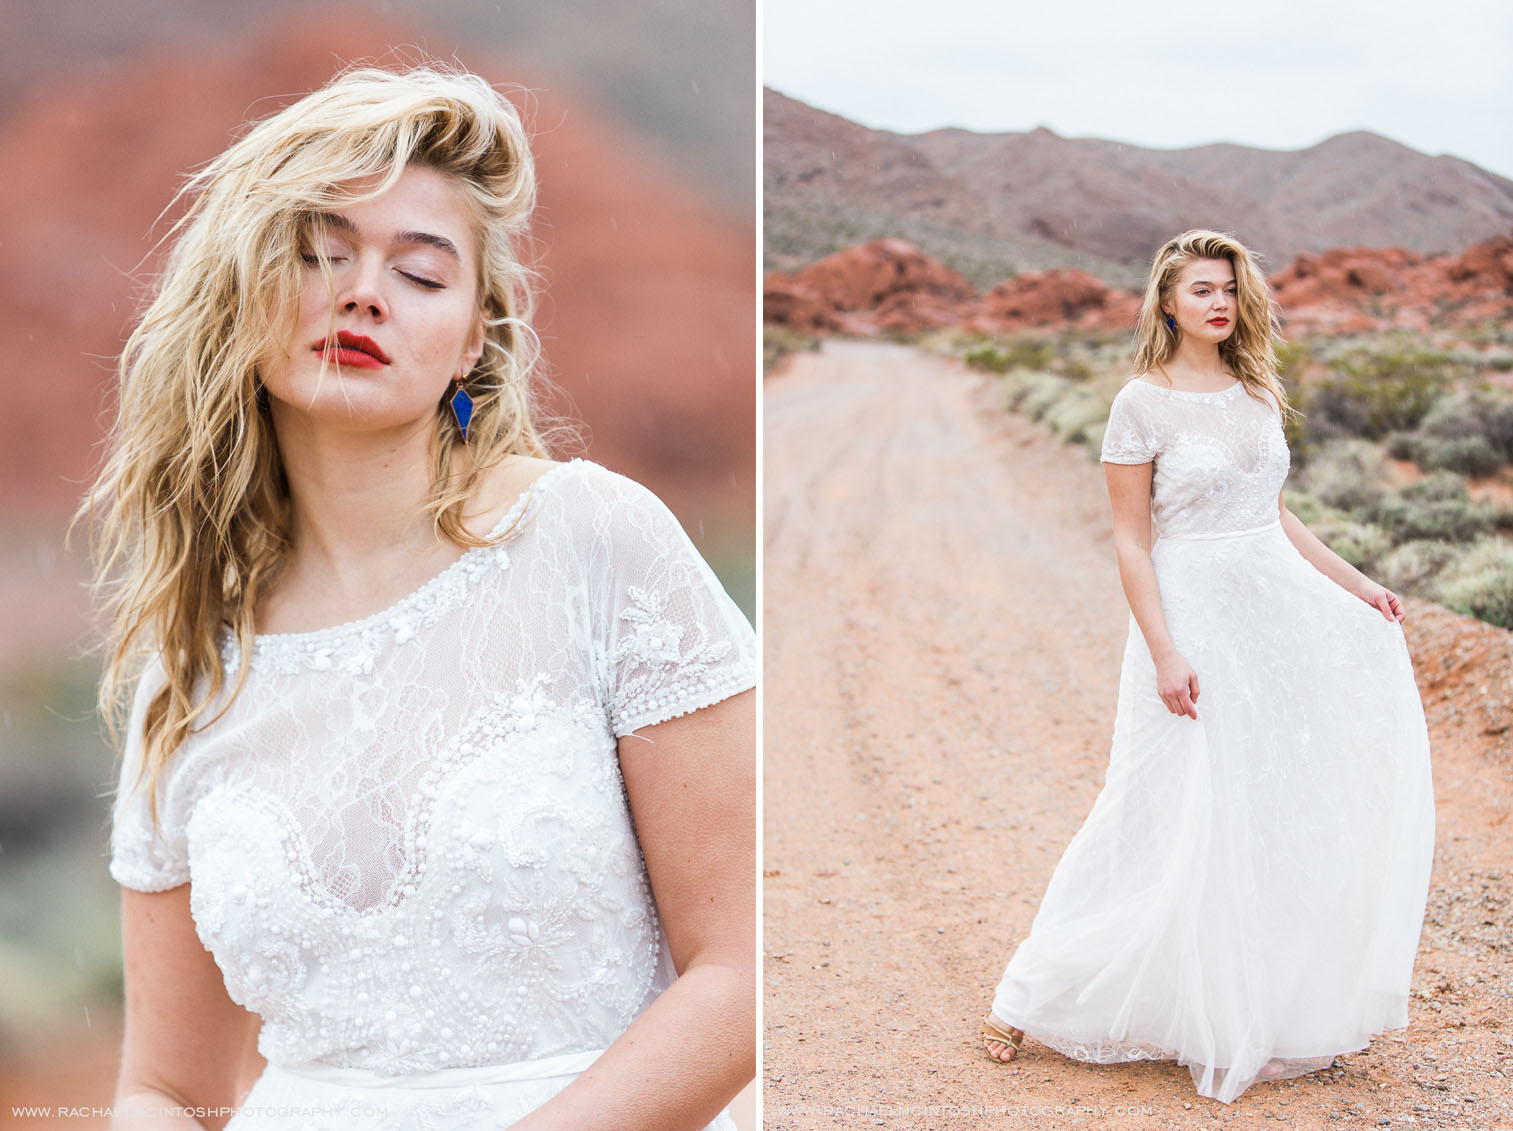 Khrystyana-styled-shoot-desert-wedding-30.jpg